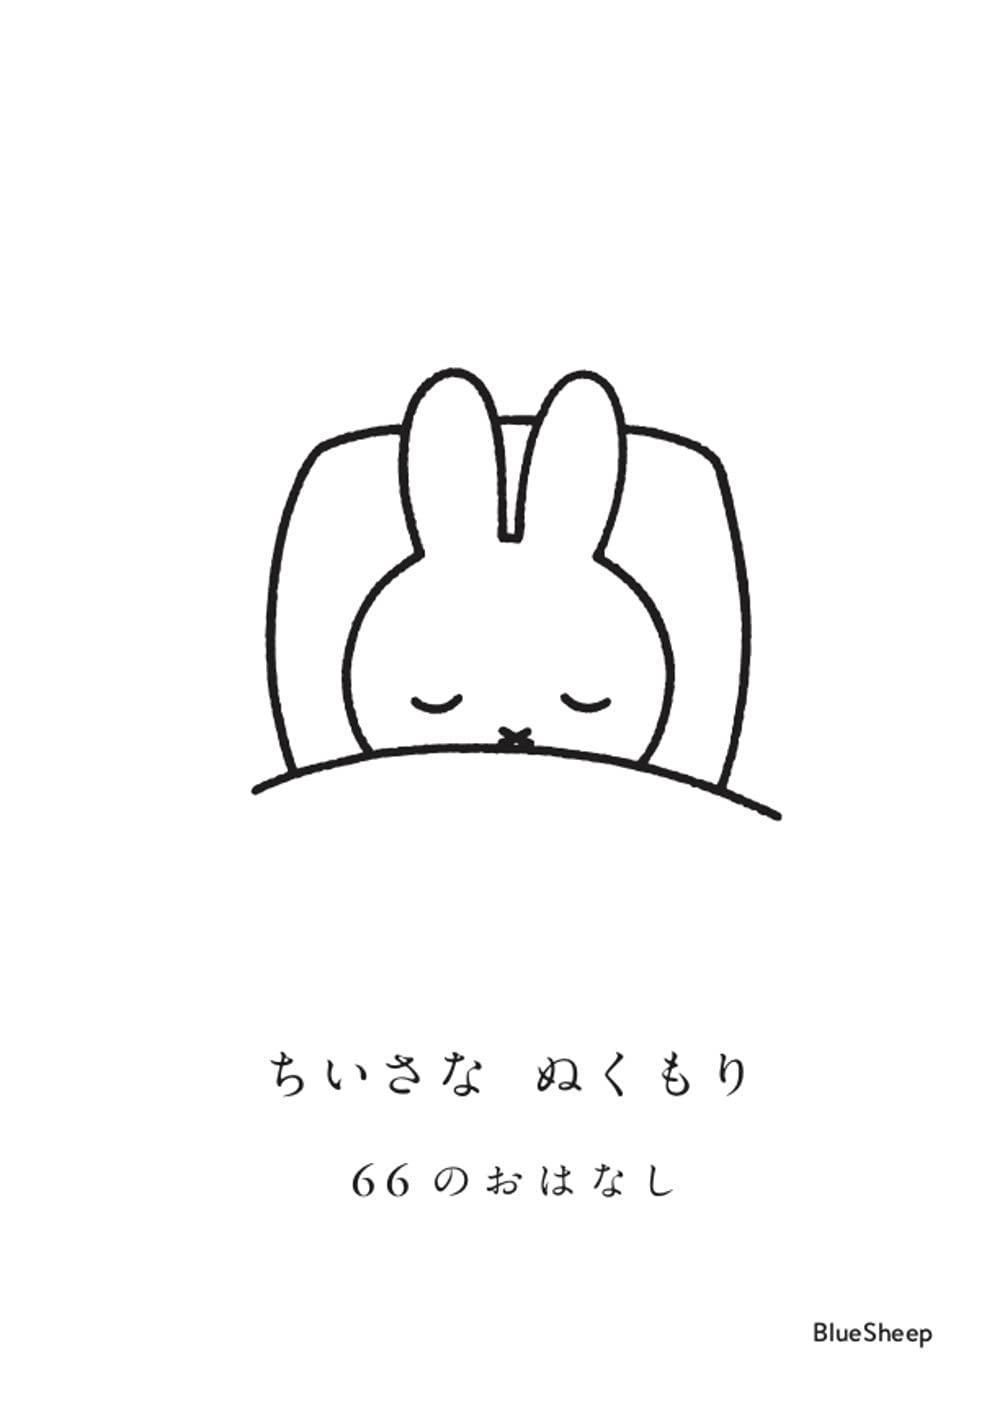 「スペシャルミッフィー」GIFT SET【10000円】